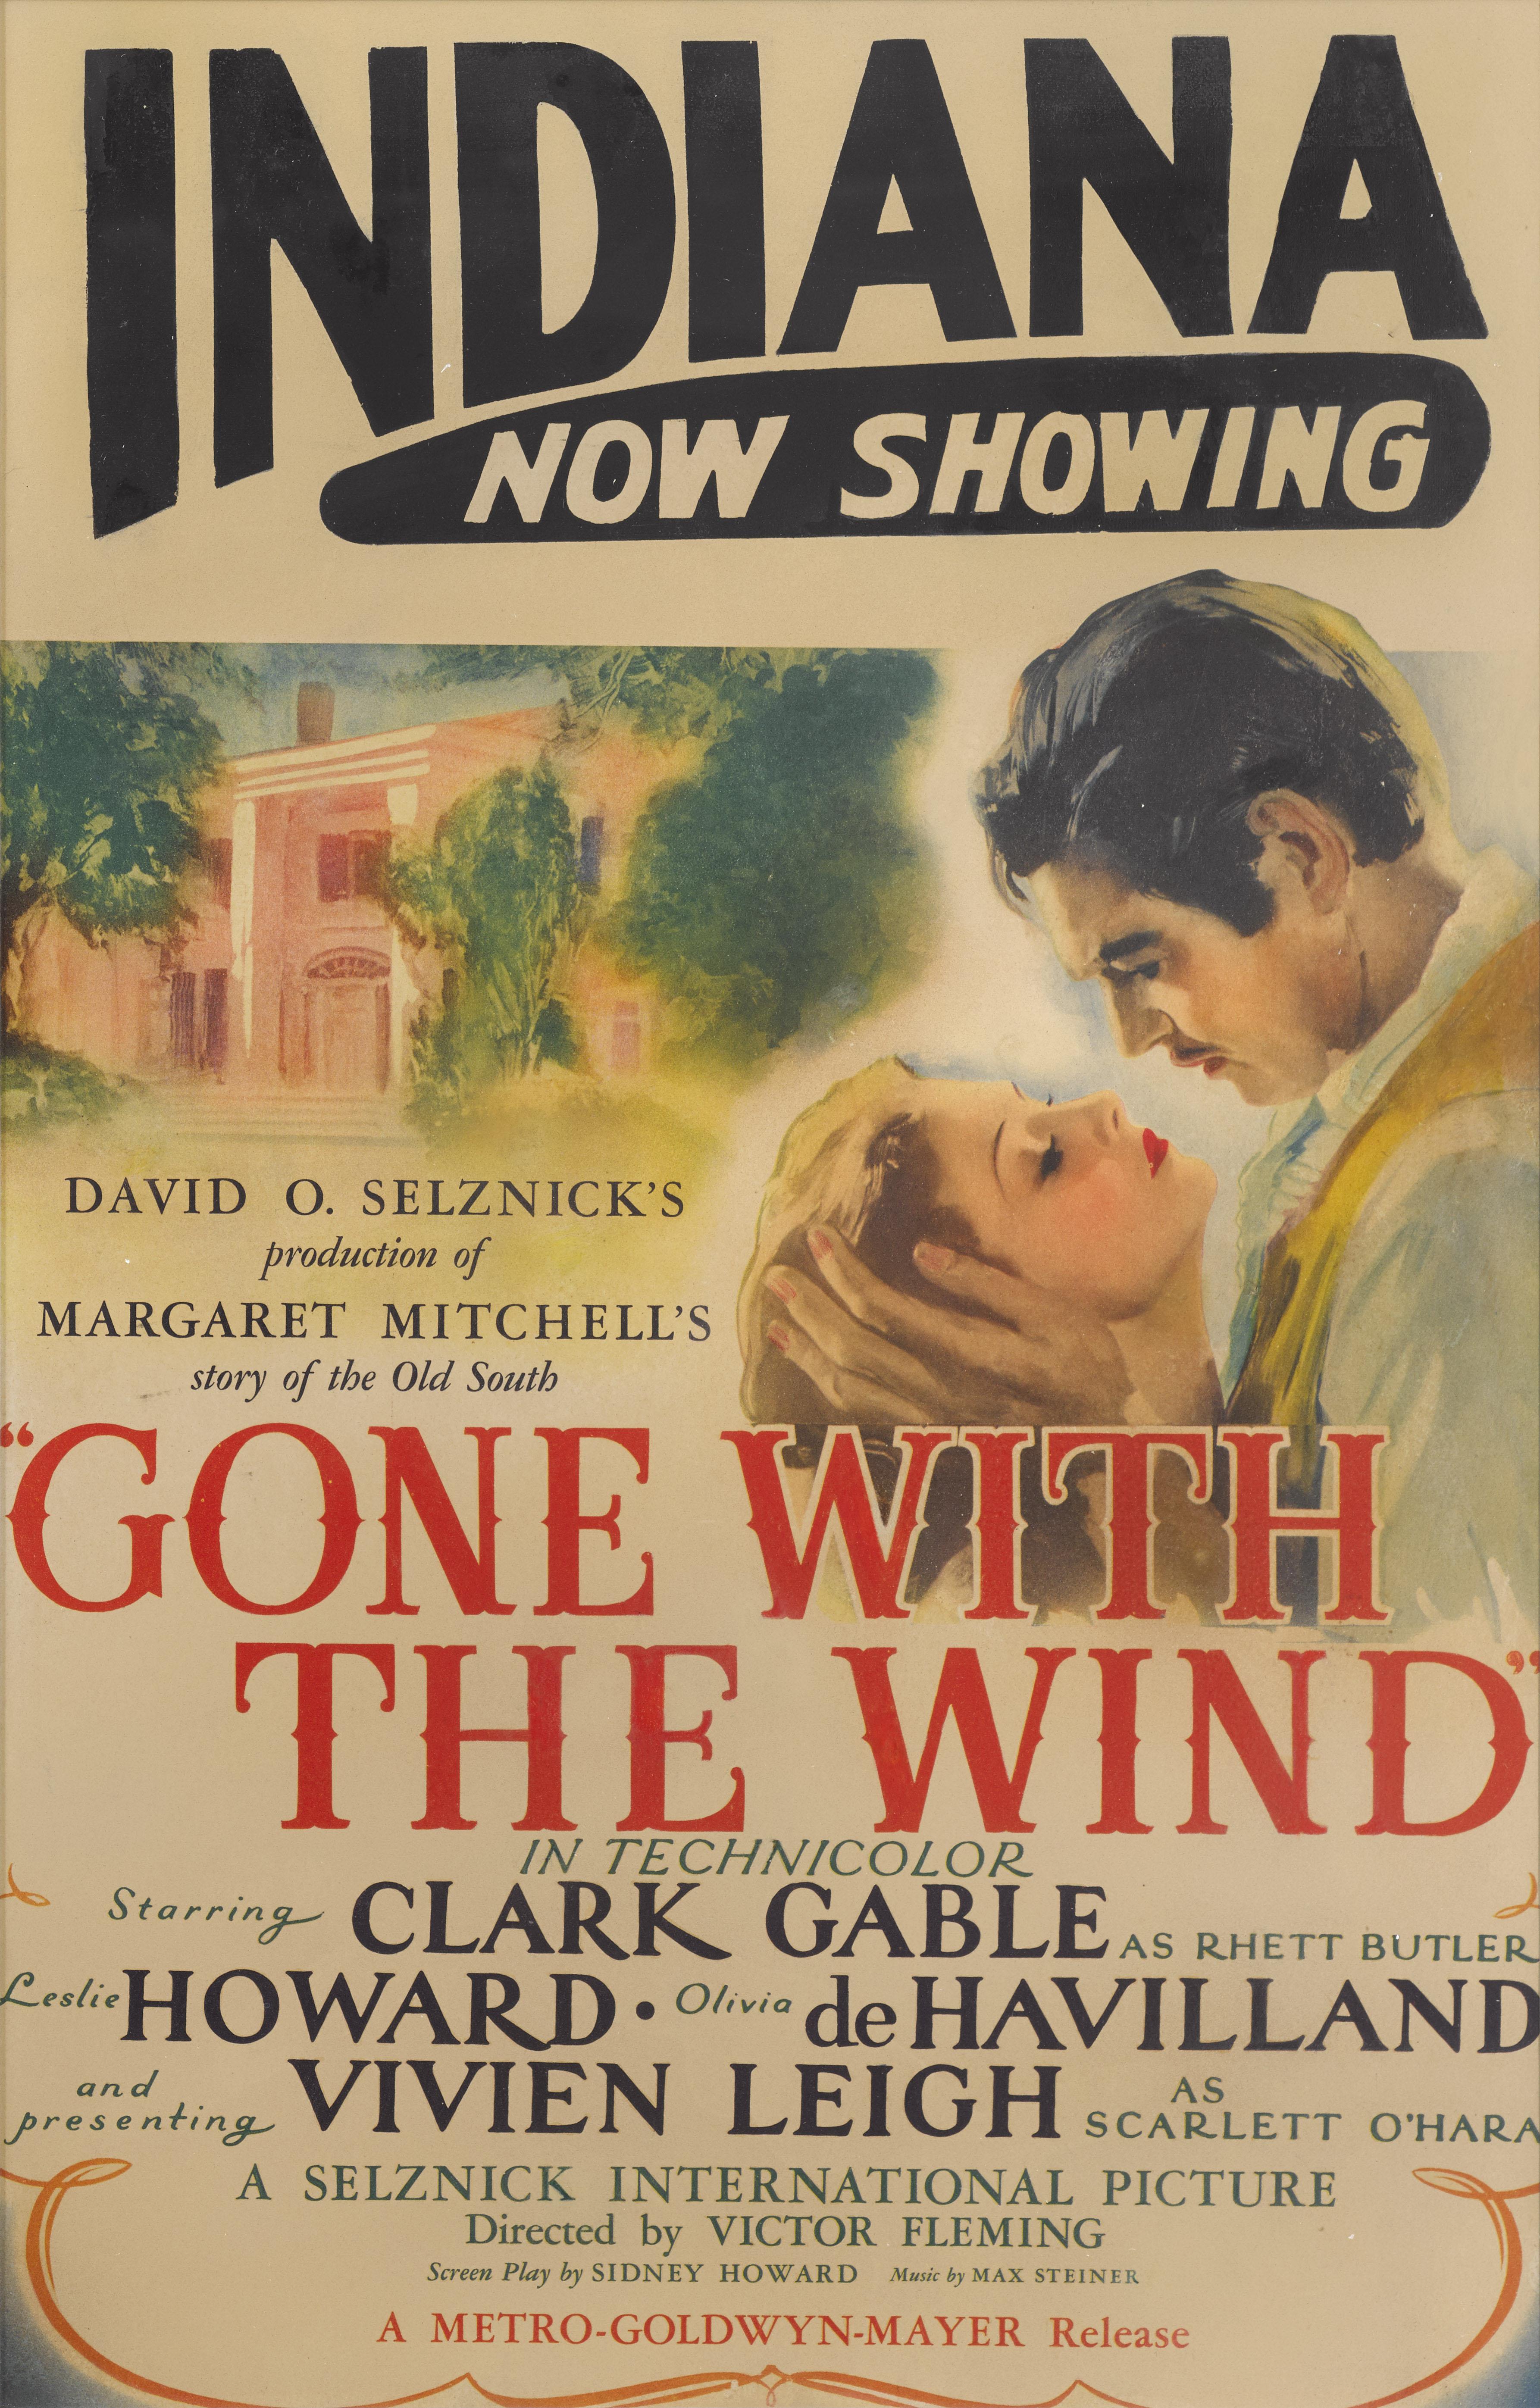 Affiche originale du film américain de 1939 avec Clark Gable et Vivien Leigh, réalisé par Victor Fleming, George Cukor et Sam Wood. Les affiches originales de ce titre légendaire sont très recherchées par les collectionneurs. Ce format d'affiche a